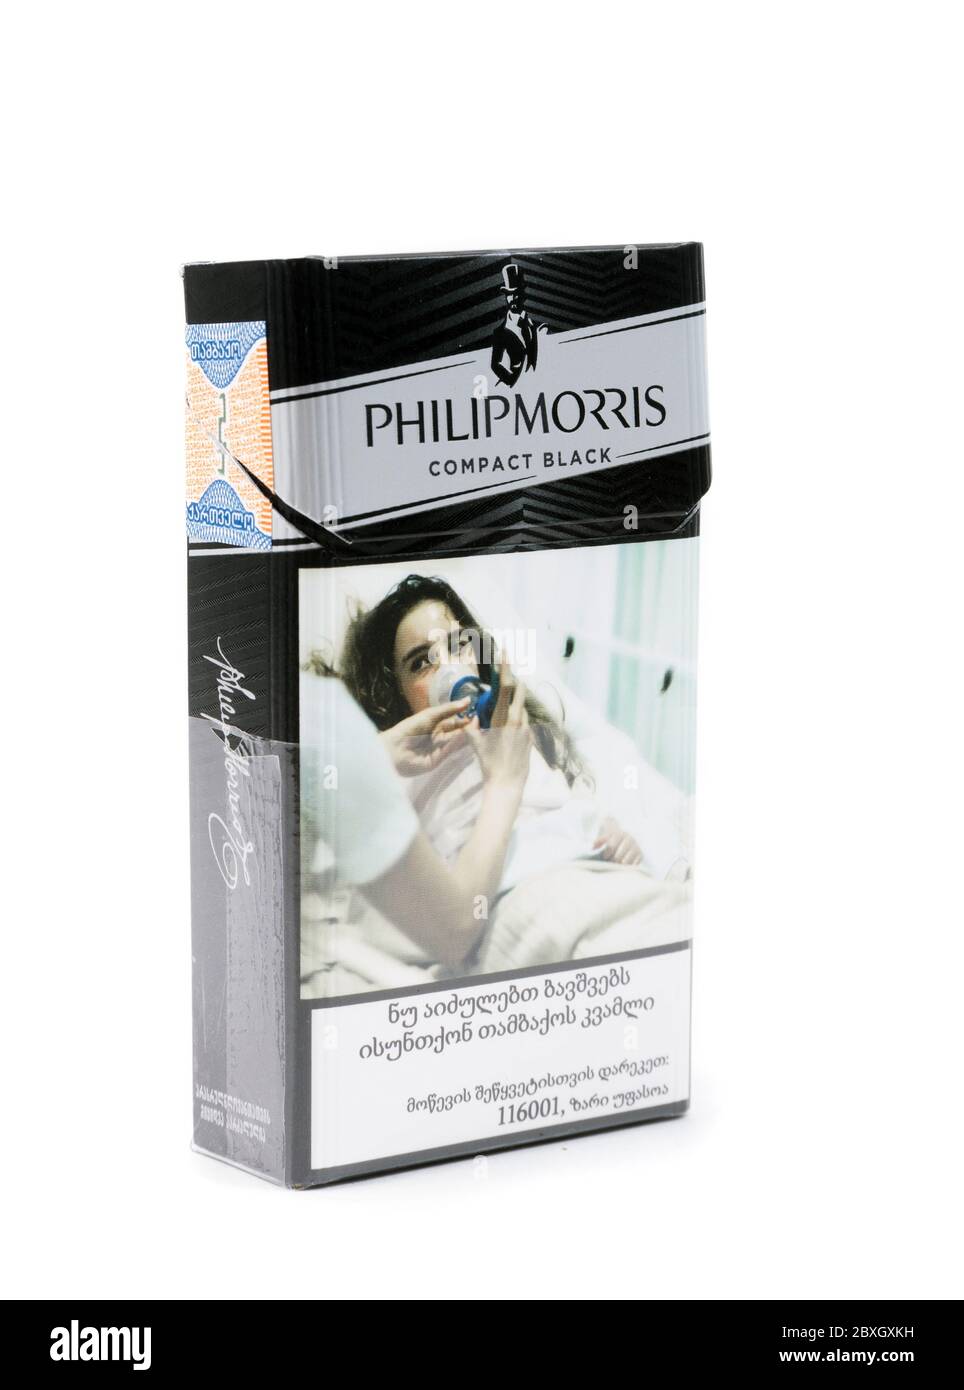 TBILISI, GEORGIA - 18 aprile 2020: Philip Morris compatto nero scatola di sigaretta primo piano Foto Stock